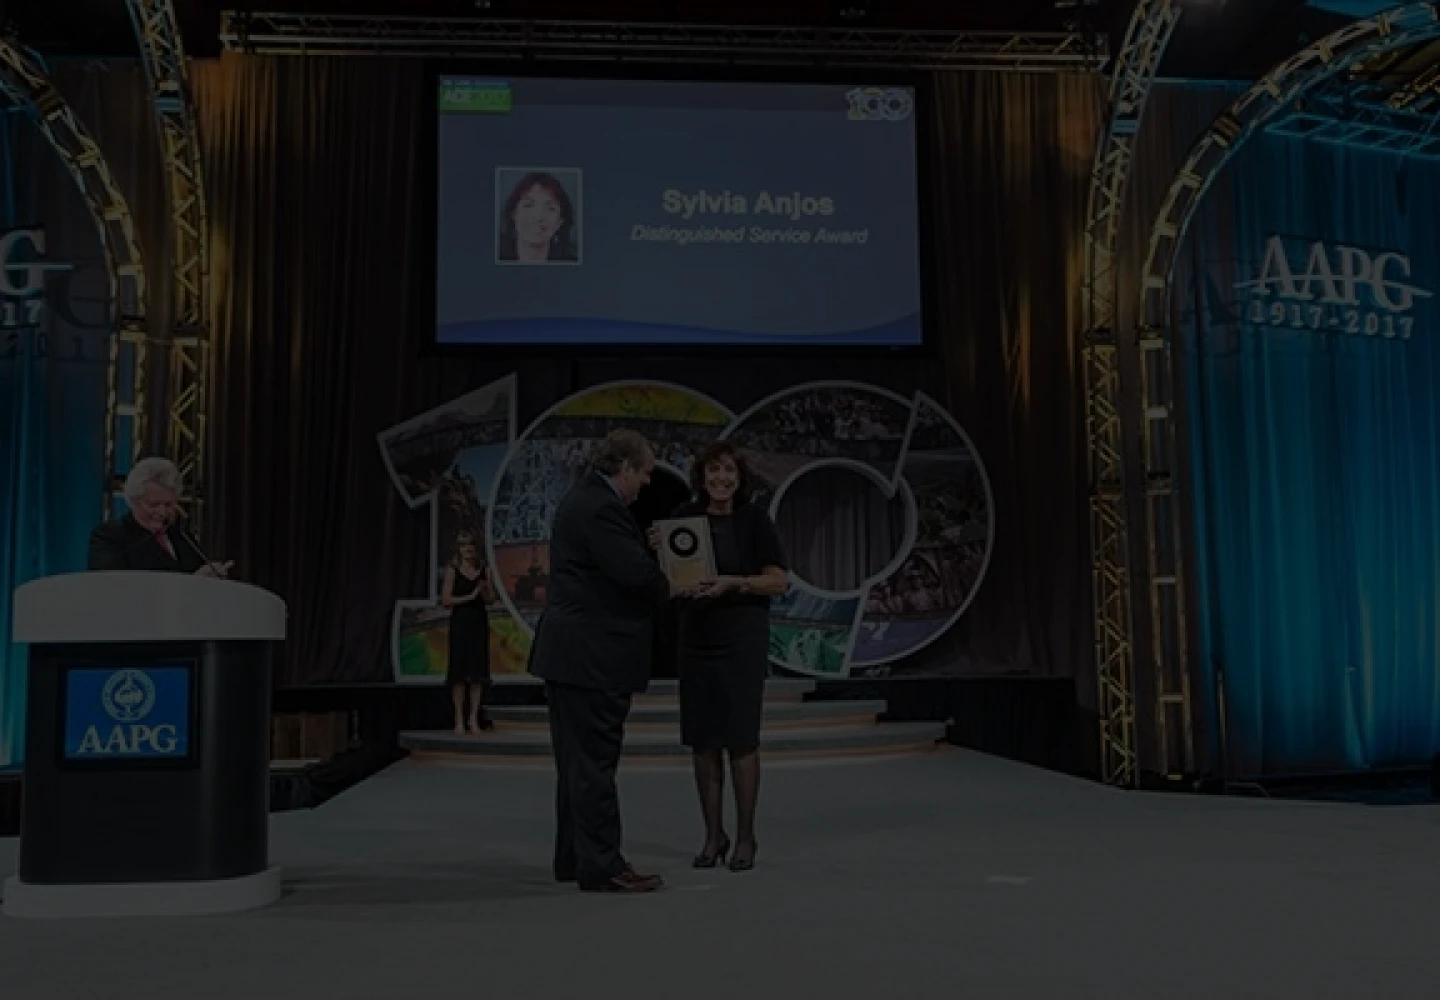 Fotografia da Sylvia Anjos, geóloga da Petrobras, recebendo o prêmio AAPG Distinguished Service Award.